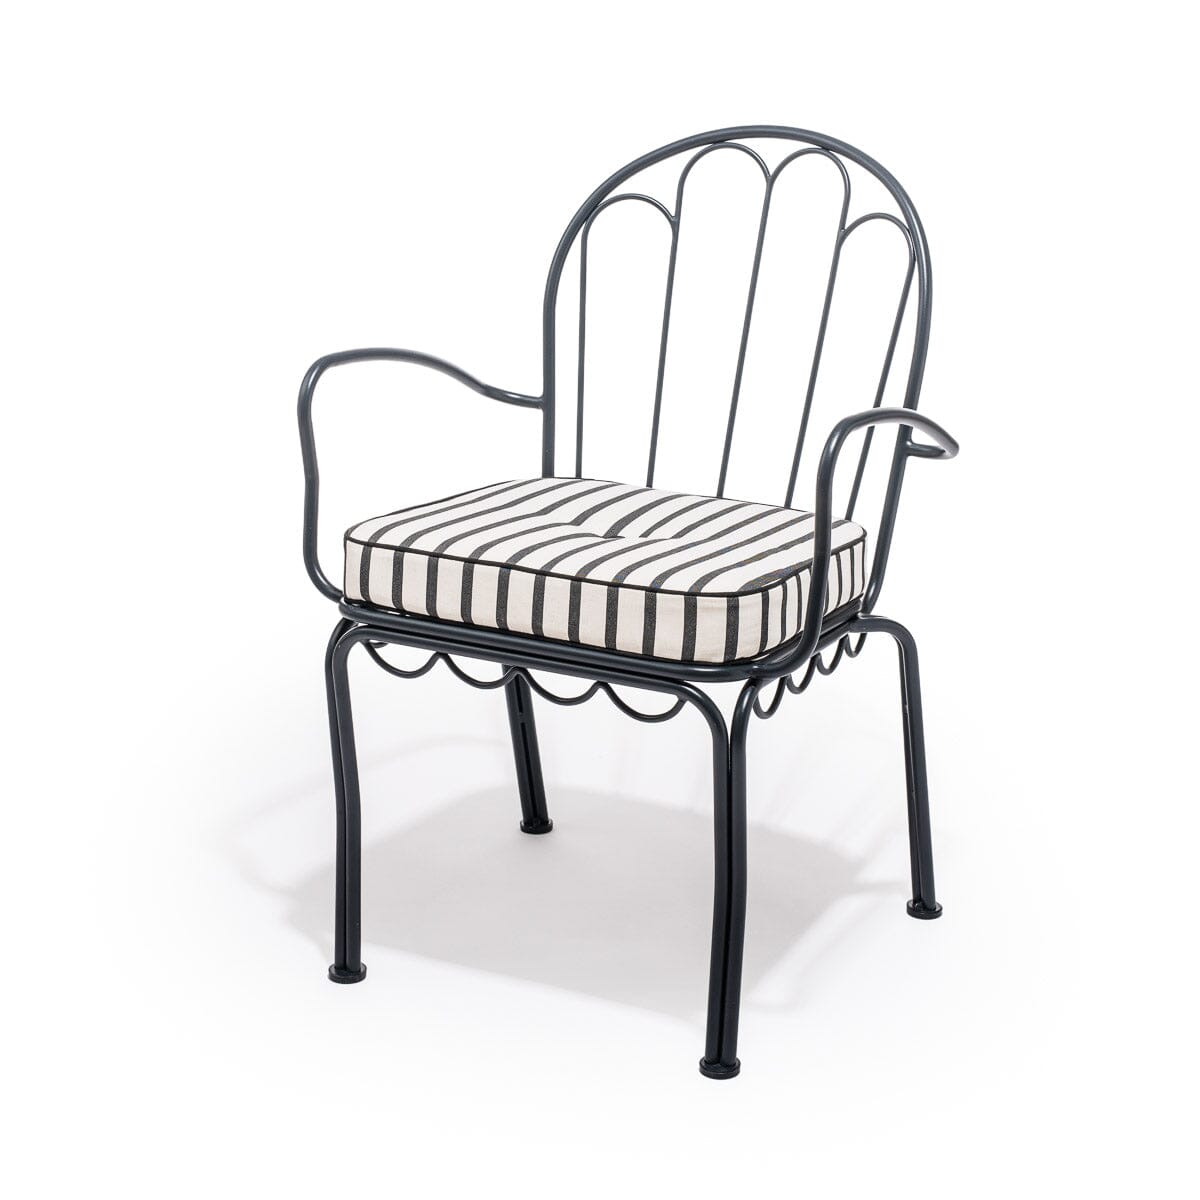 The Al Fresco Chair Cushion - Monaco Black Stripe Al Fresco Chair Cushion Business & Pleasure Co 